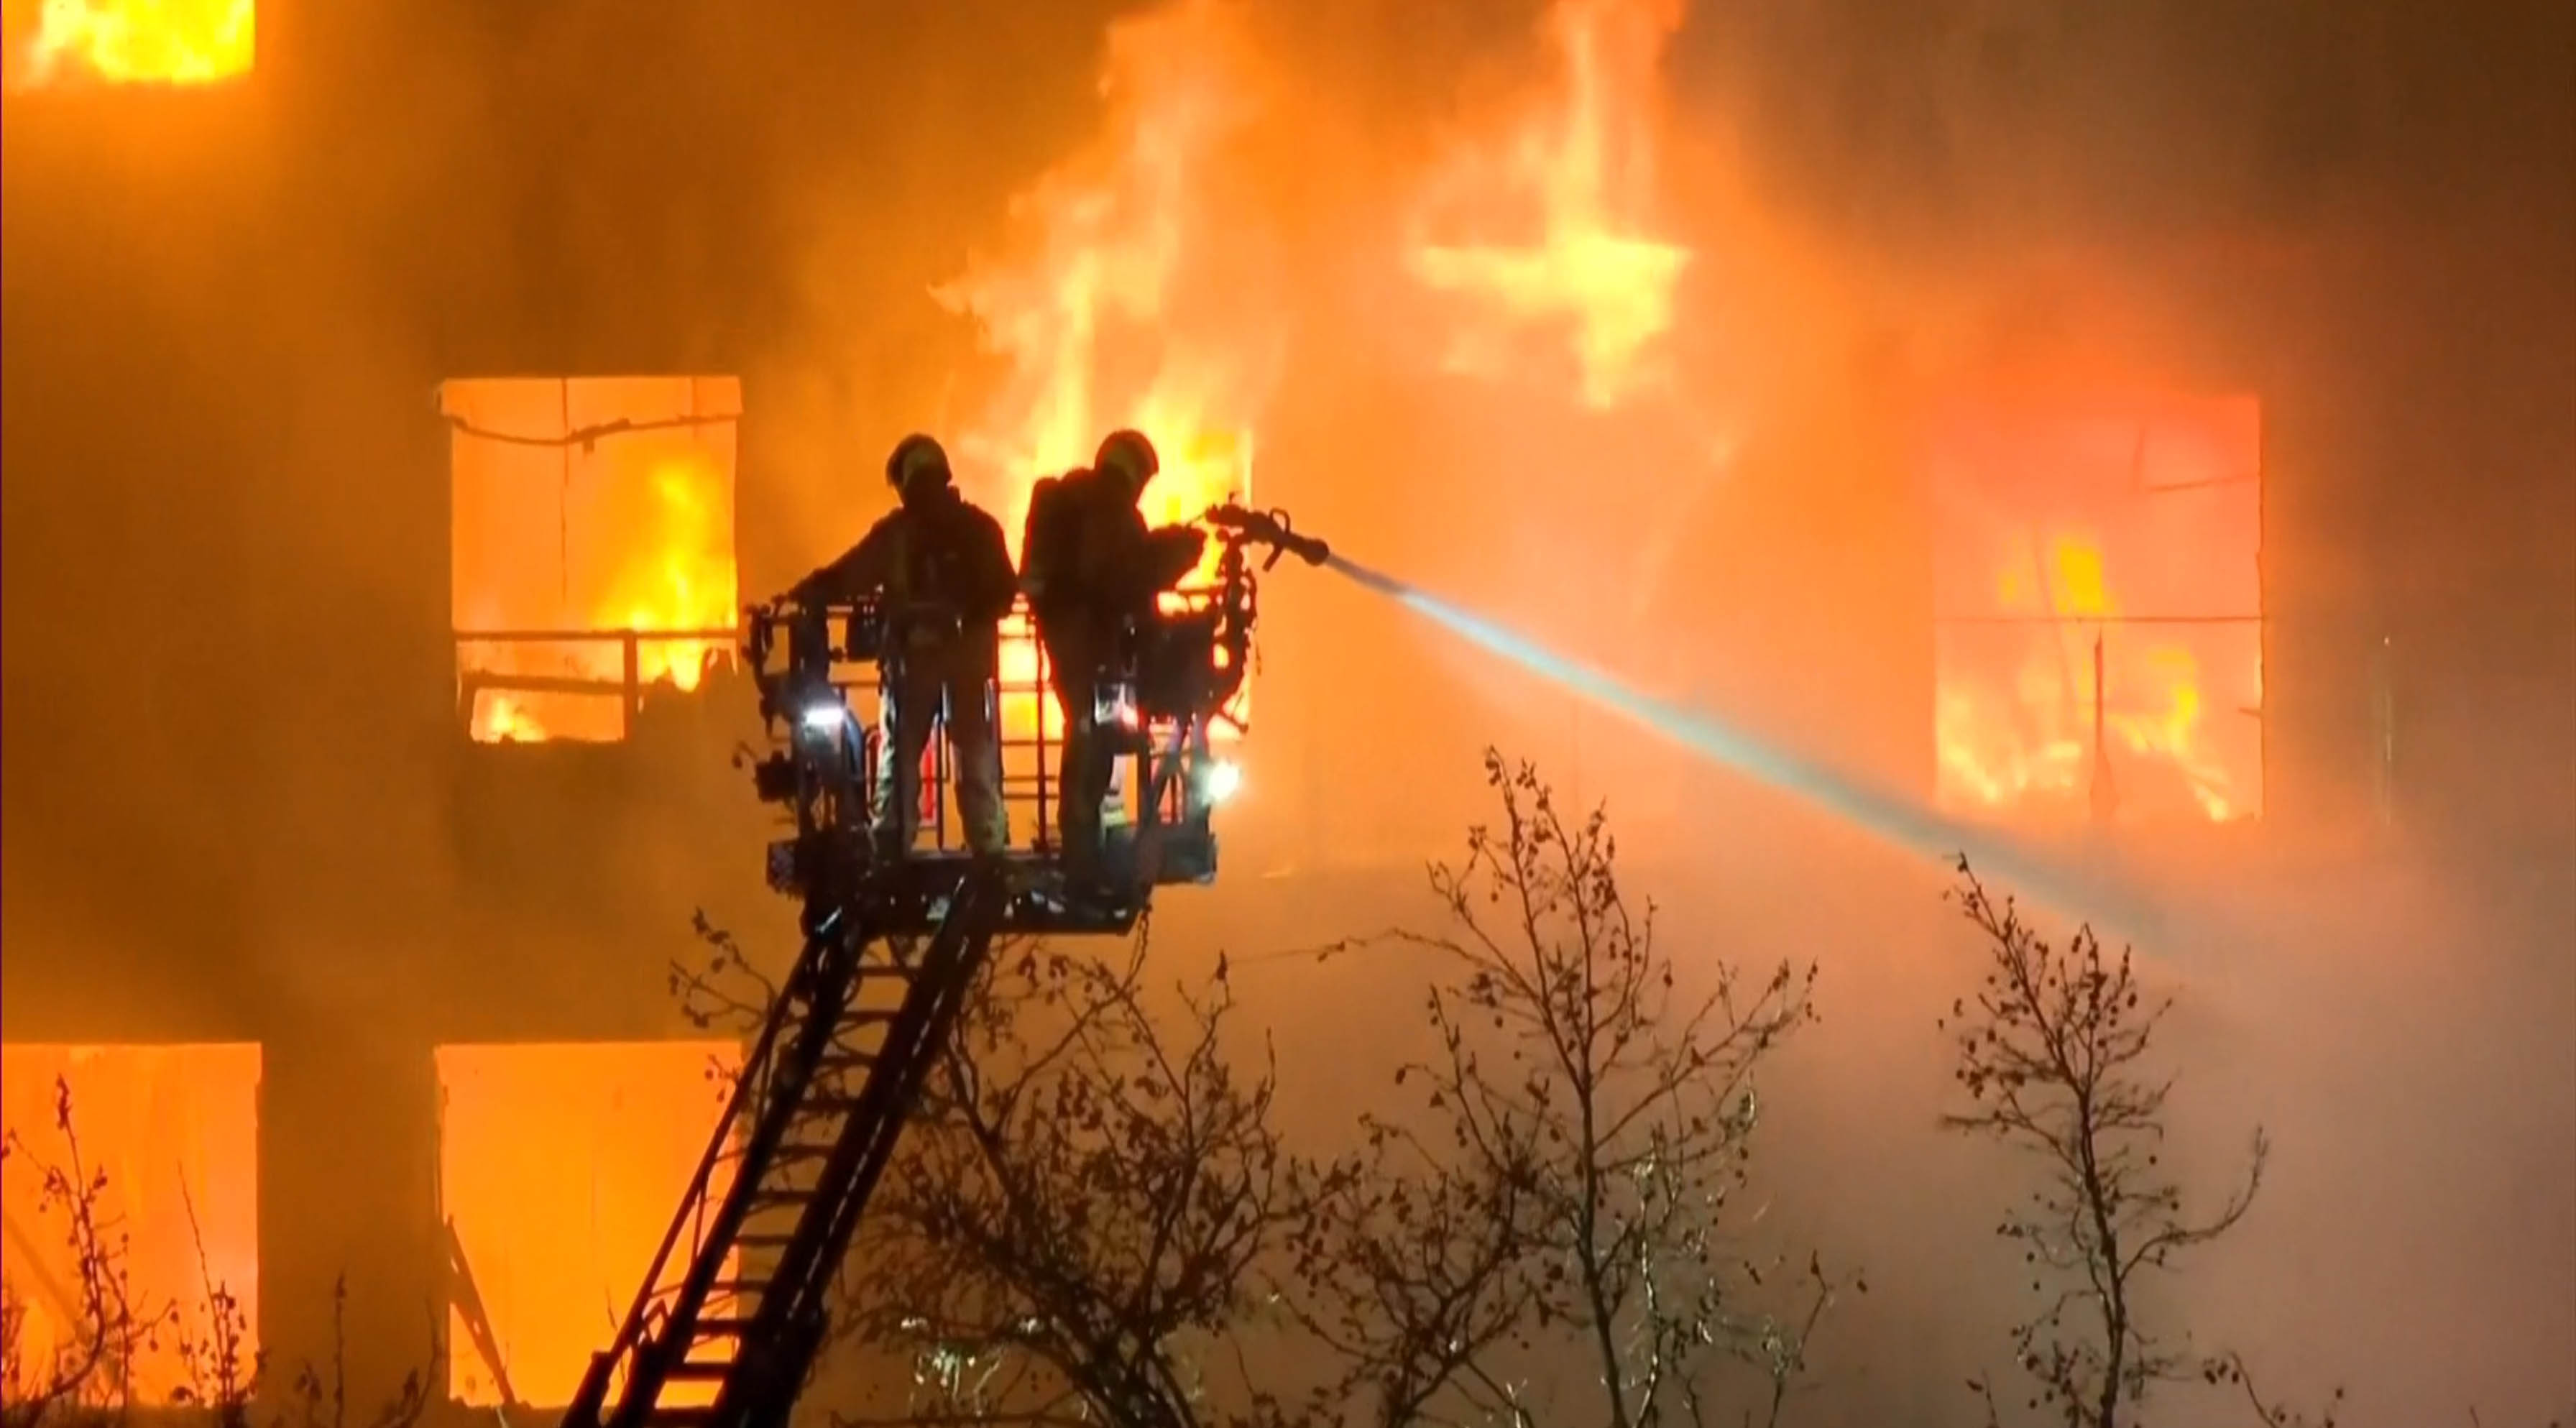 Zwei Feuerwehrleute löschen die Flammen verzweifelt mit Wasser